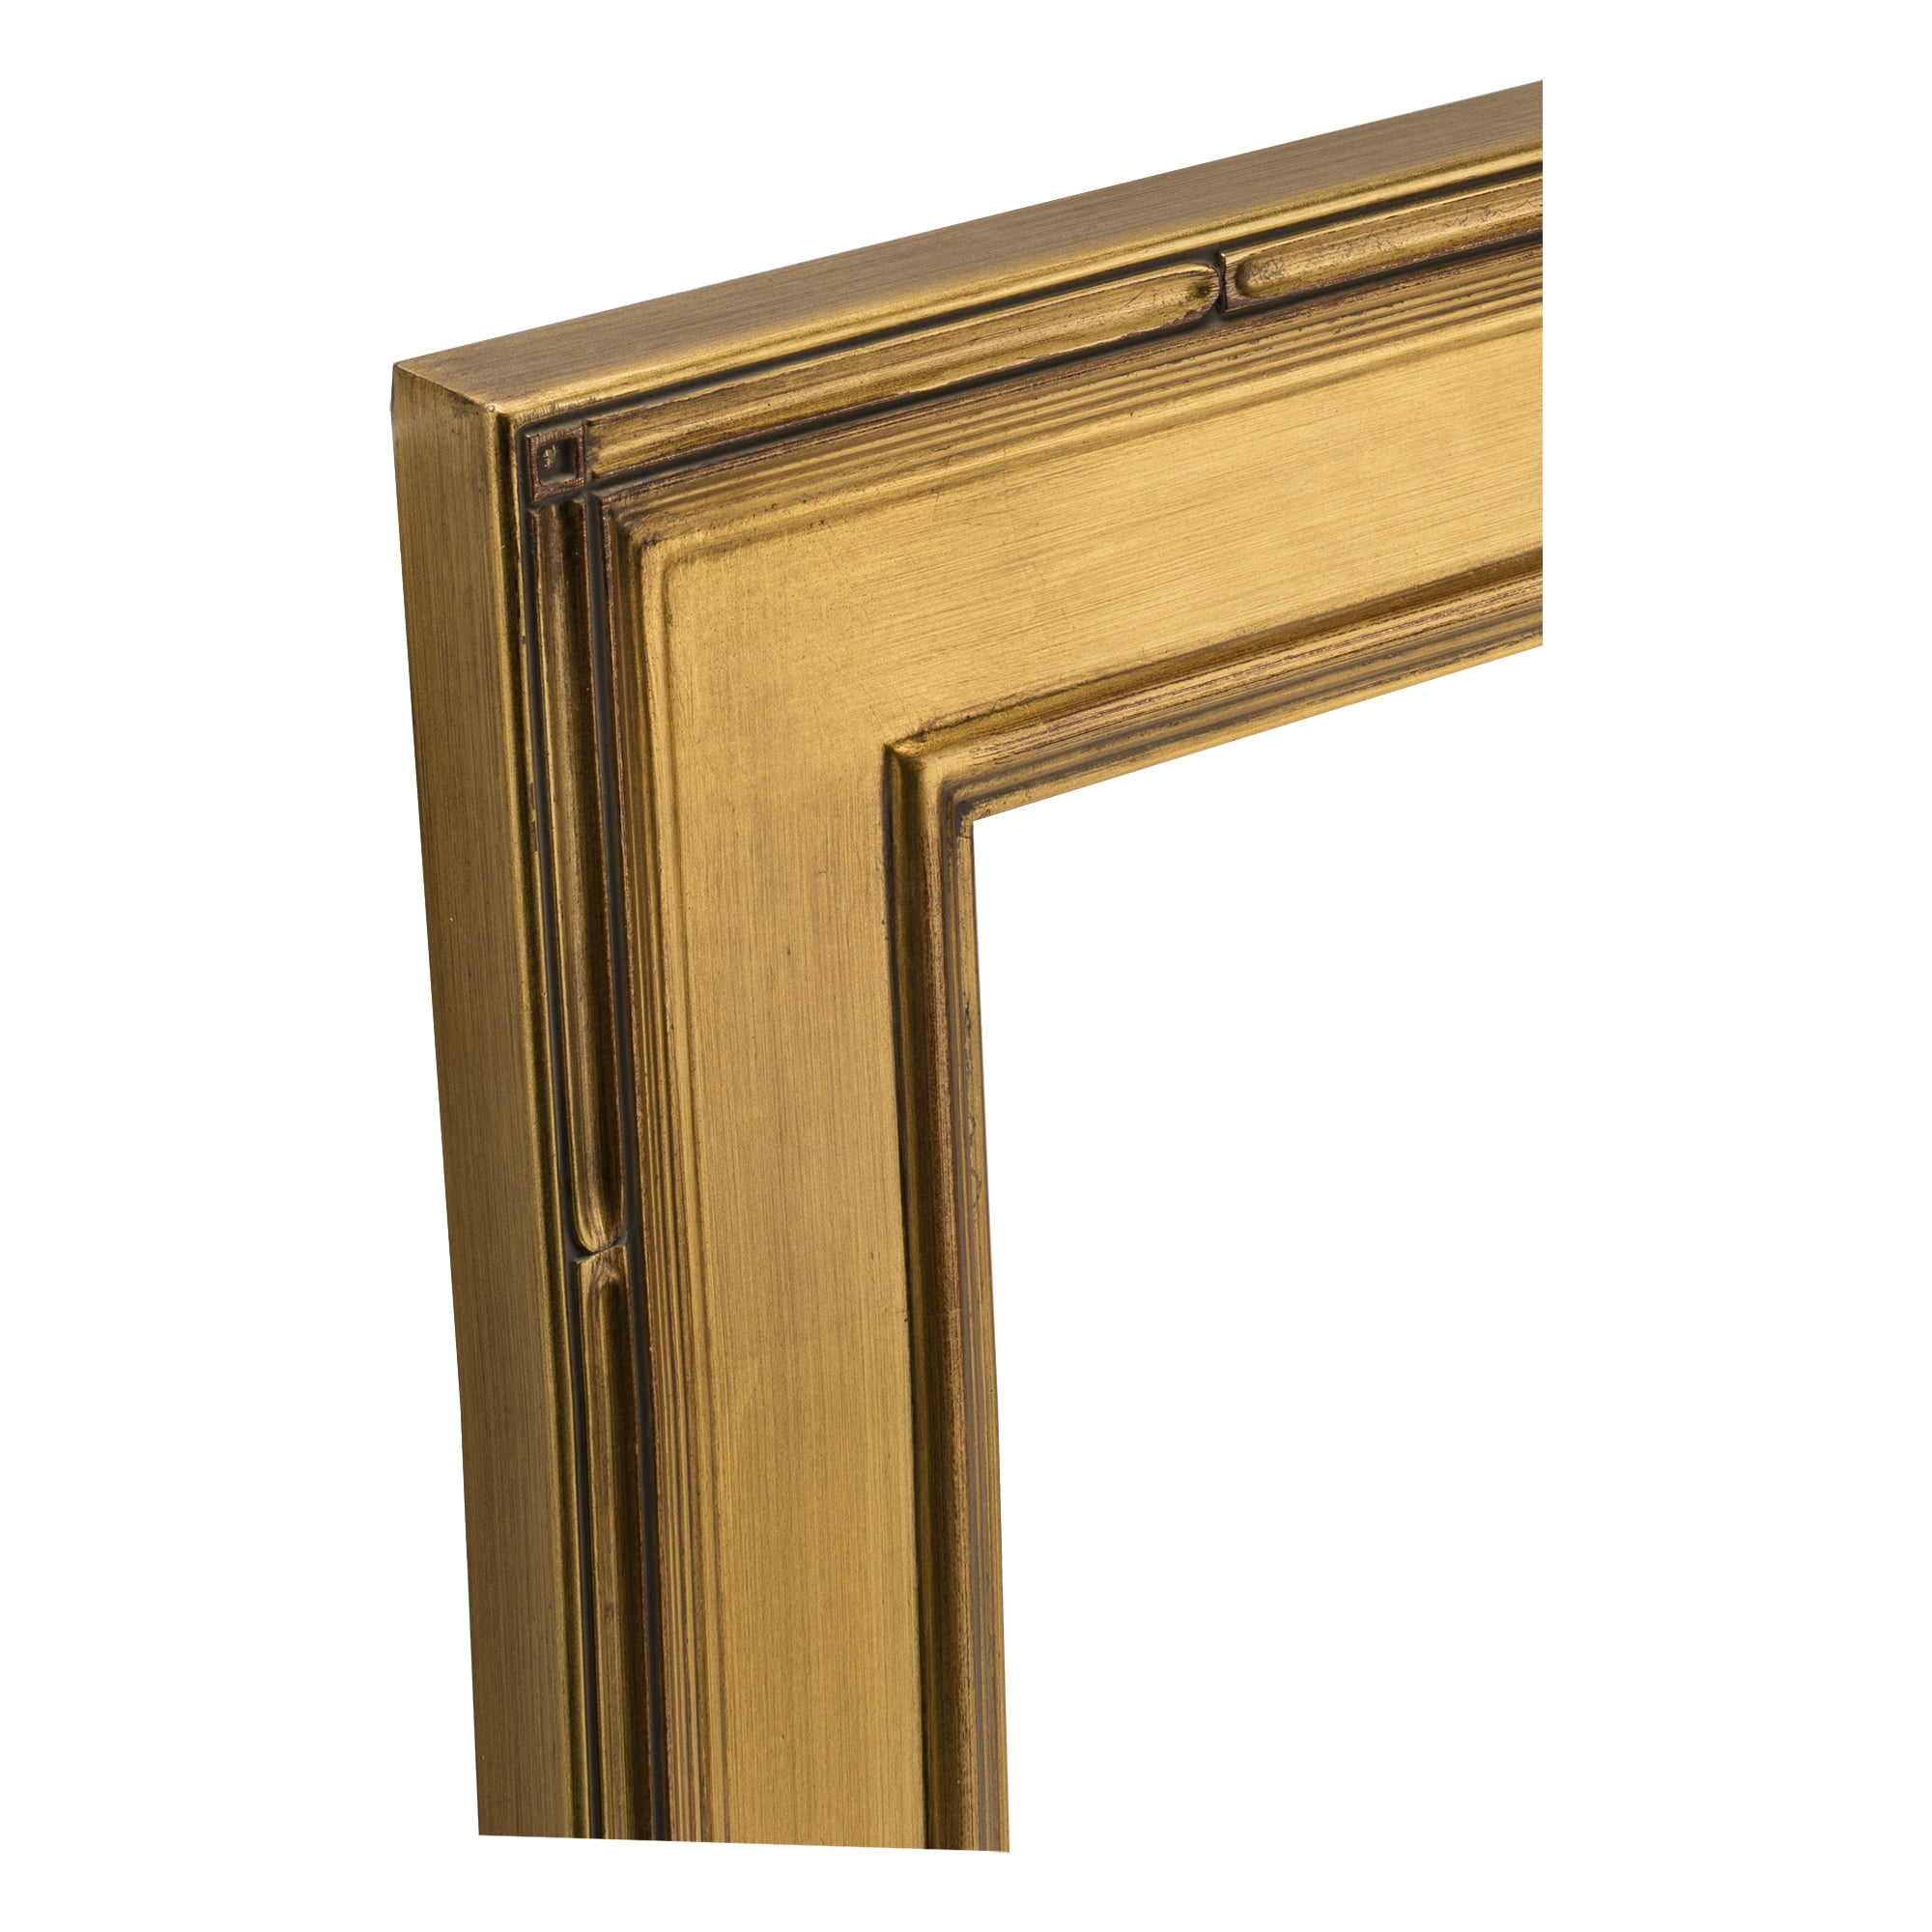 Plein Air Frame Single 12x12 - Gold